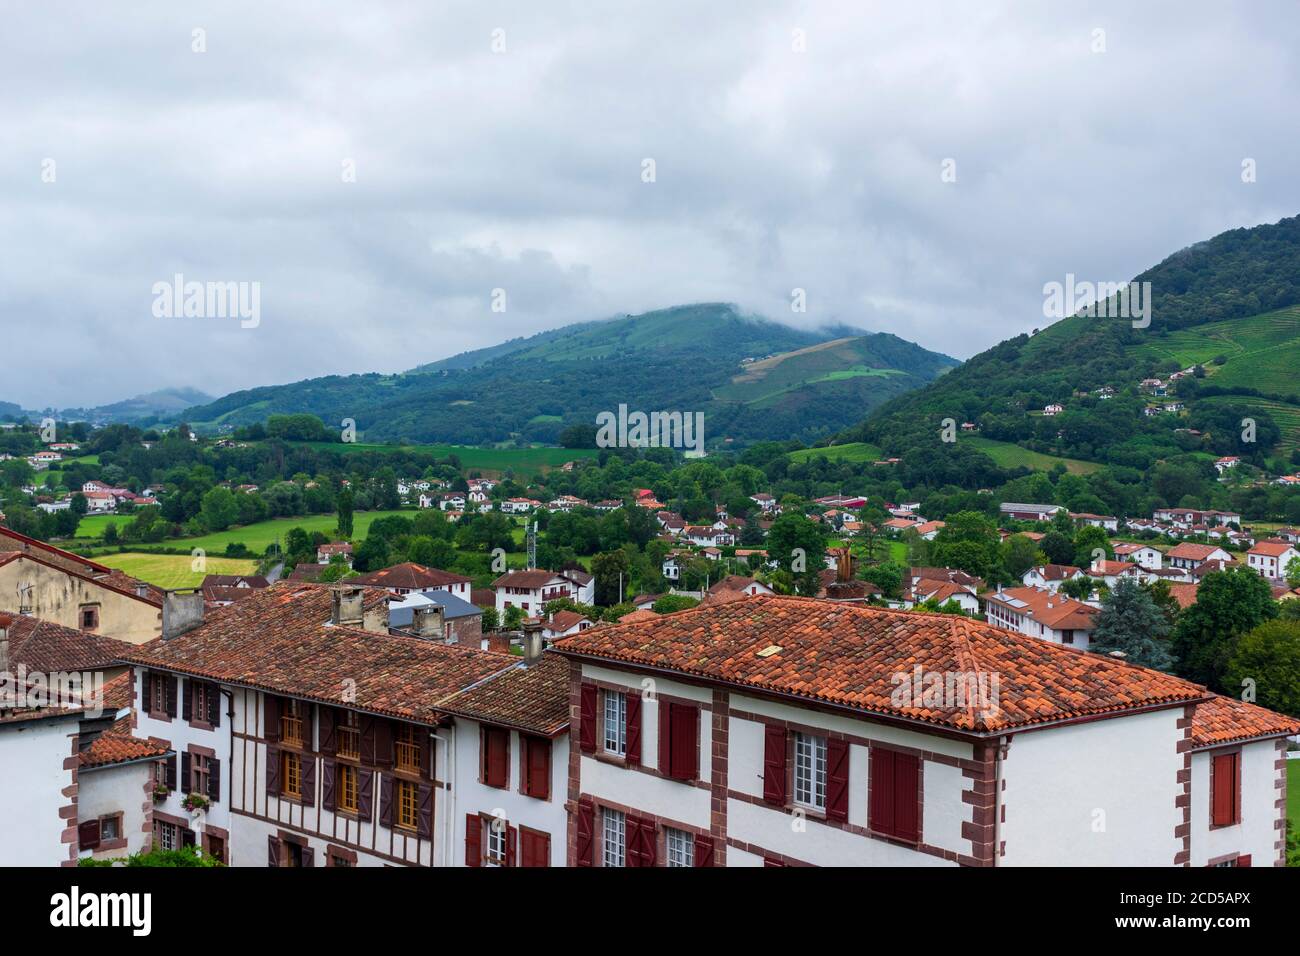 The pretty town of San Juan de Pie de Puerto, France Stock Photo